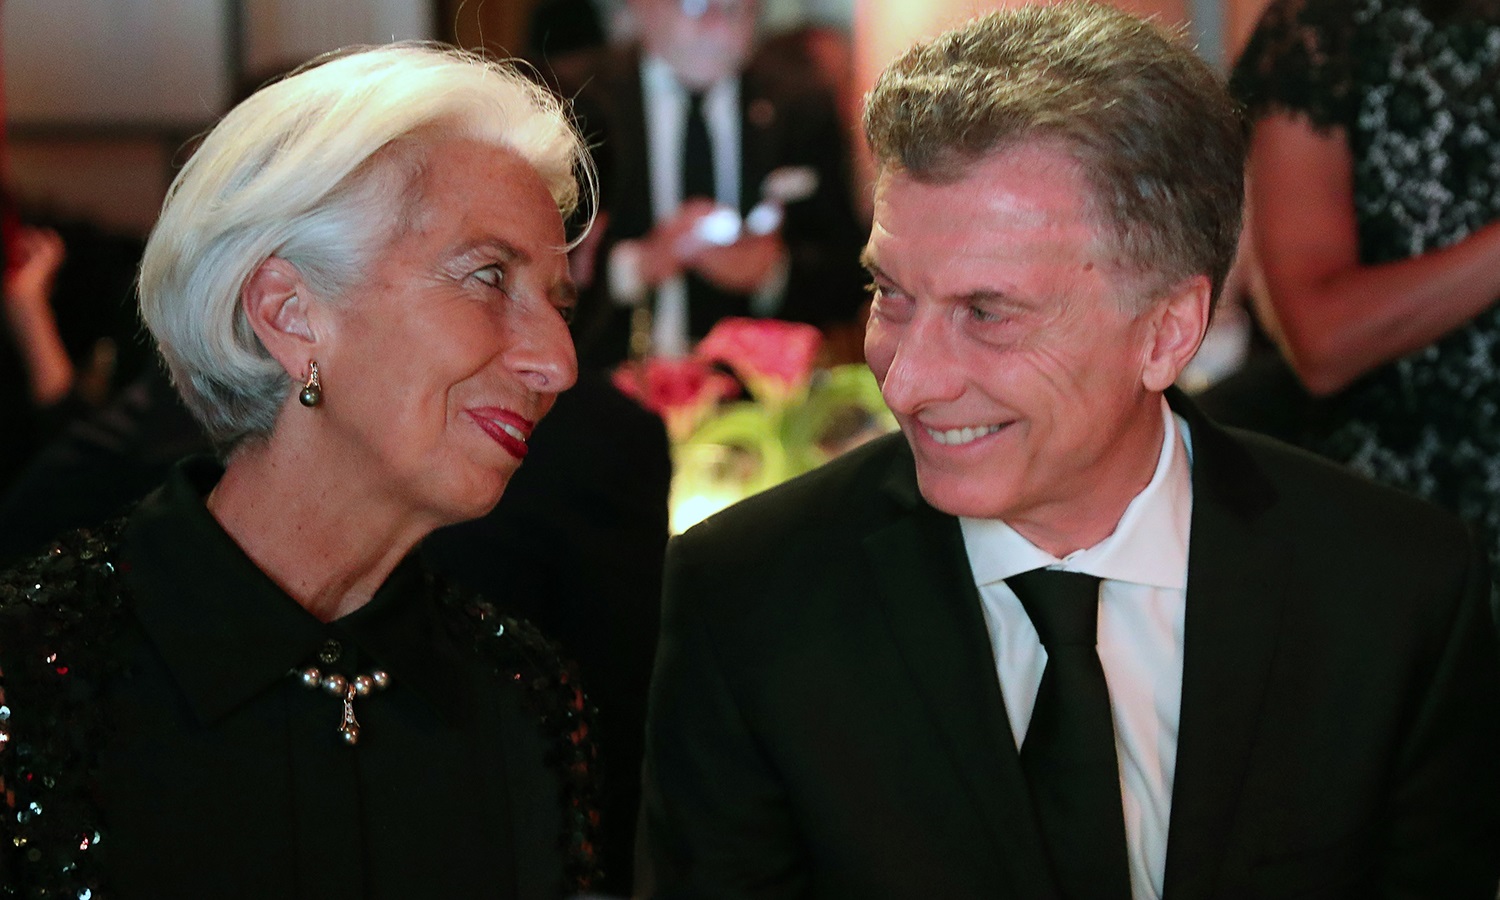 El presidente Macri recibió el premio Ciudadano Global 2018